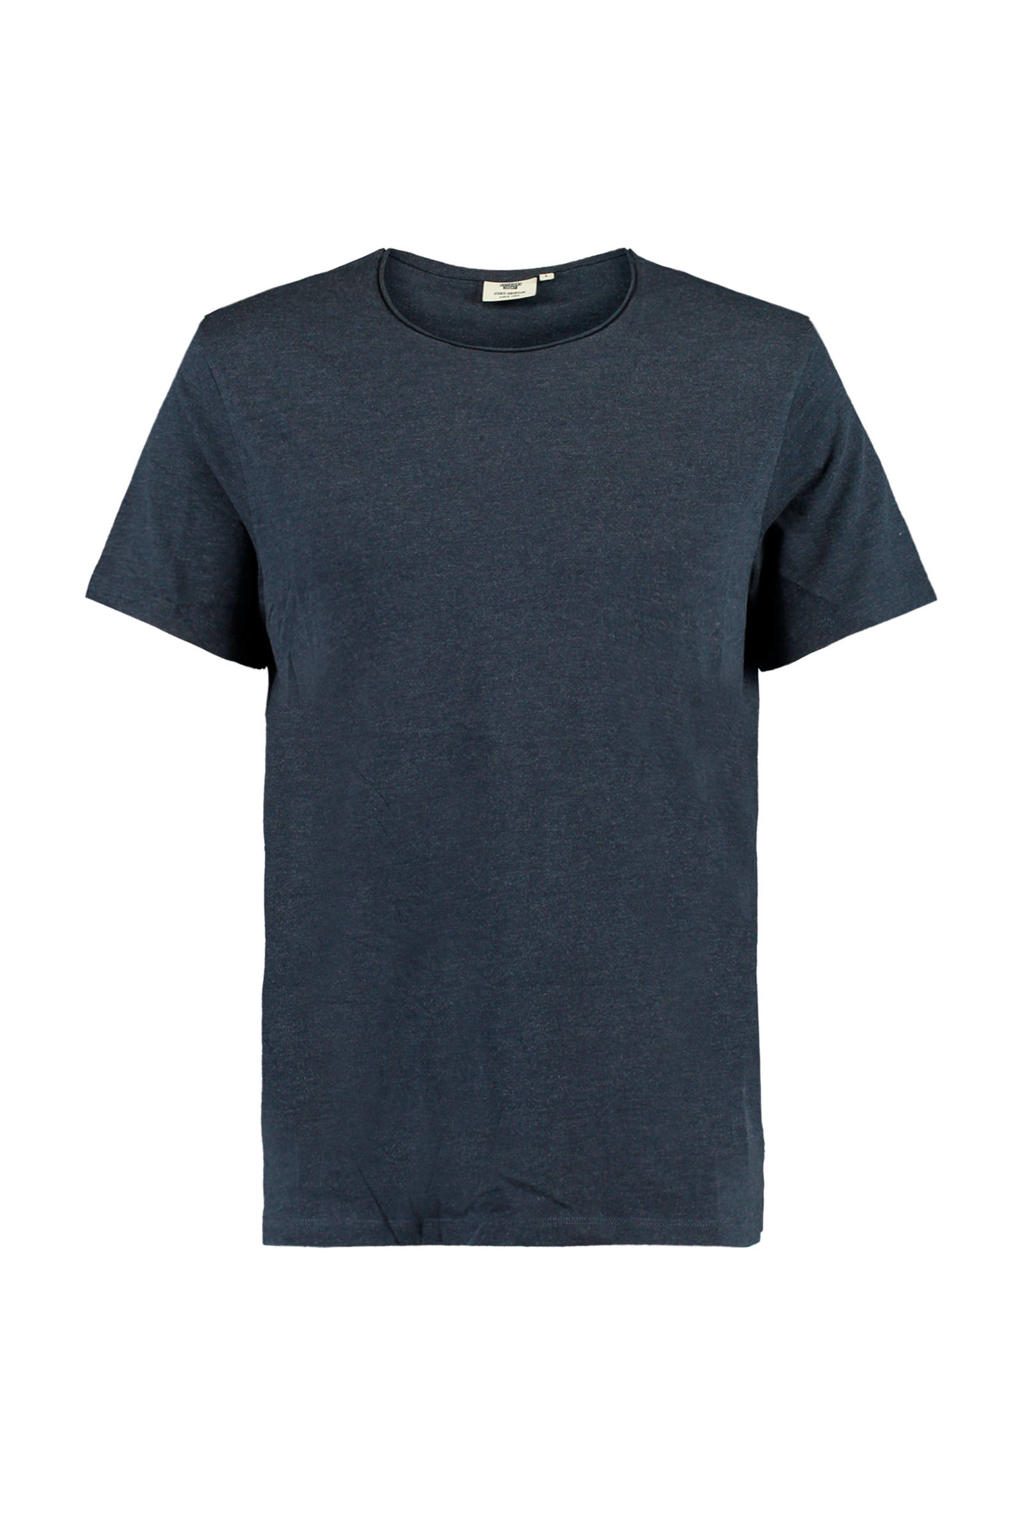 America Today T-shirt Took van biologisch katoen donkerblauw